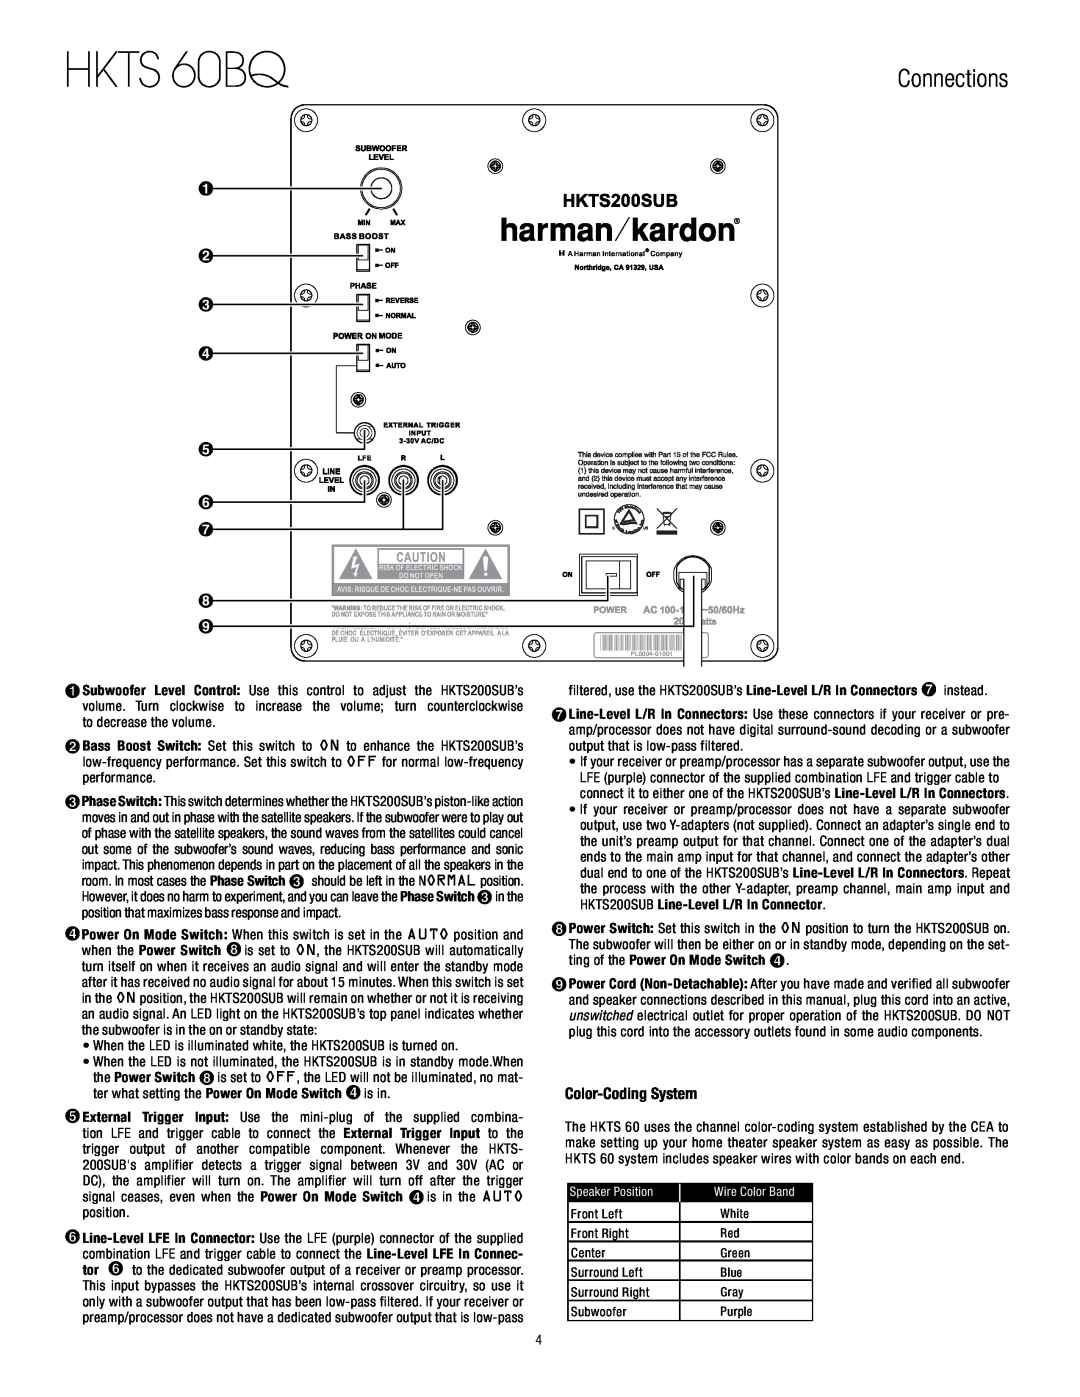 Harman-Kardon owner manual HKTS 60BQ, Connections, Color-CodingSystem 